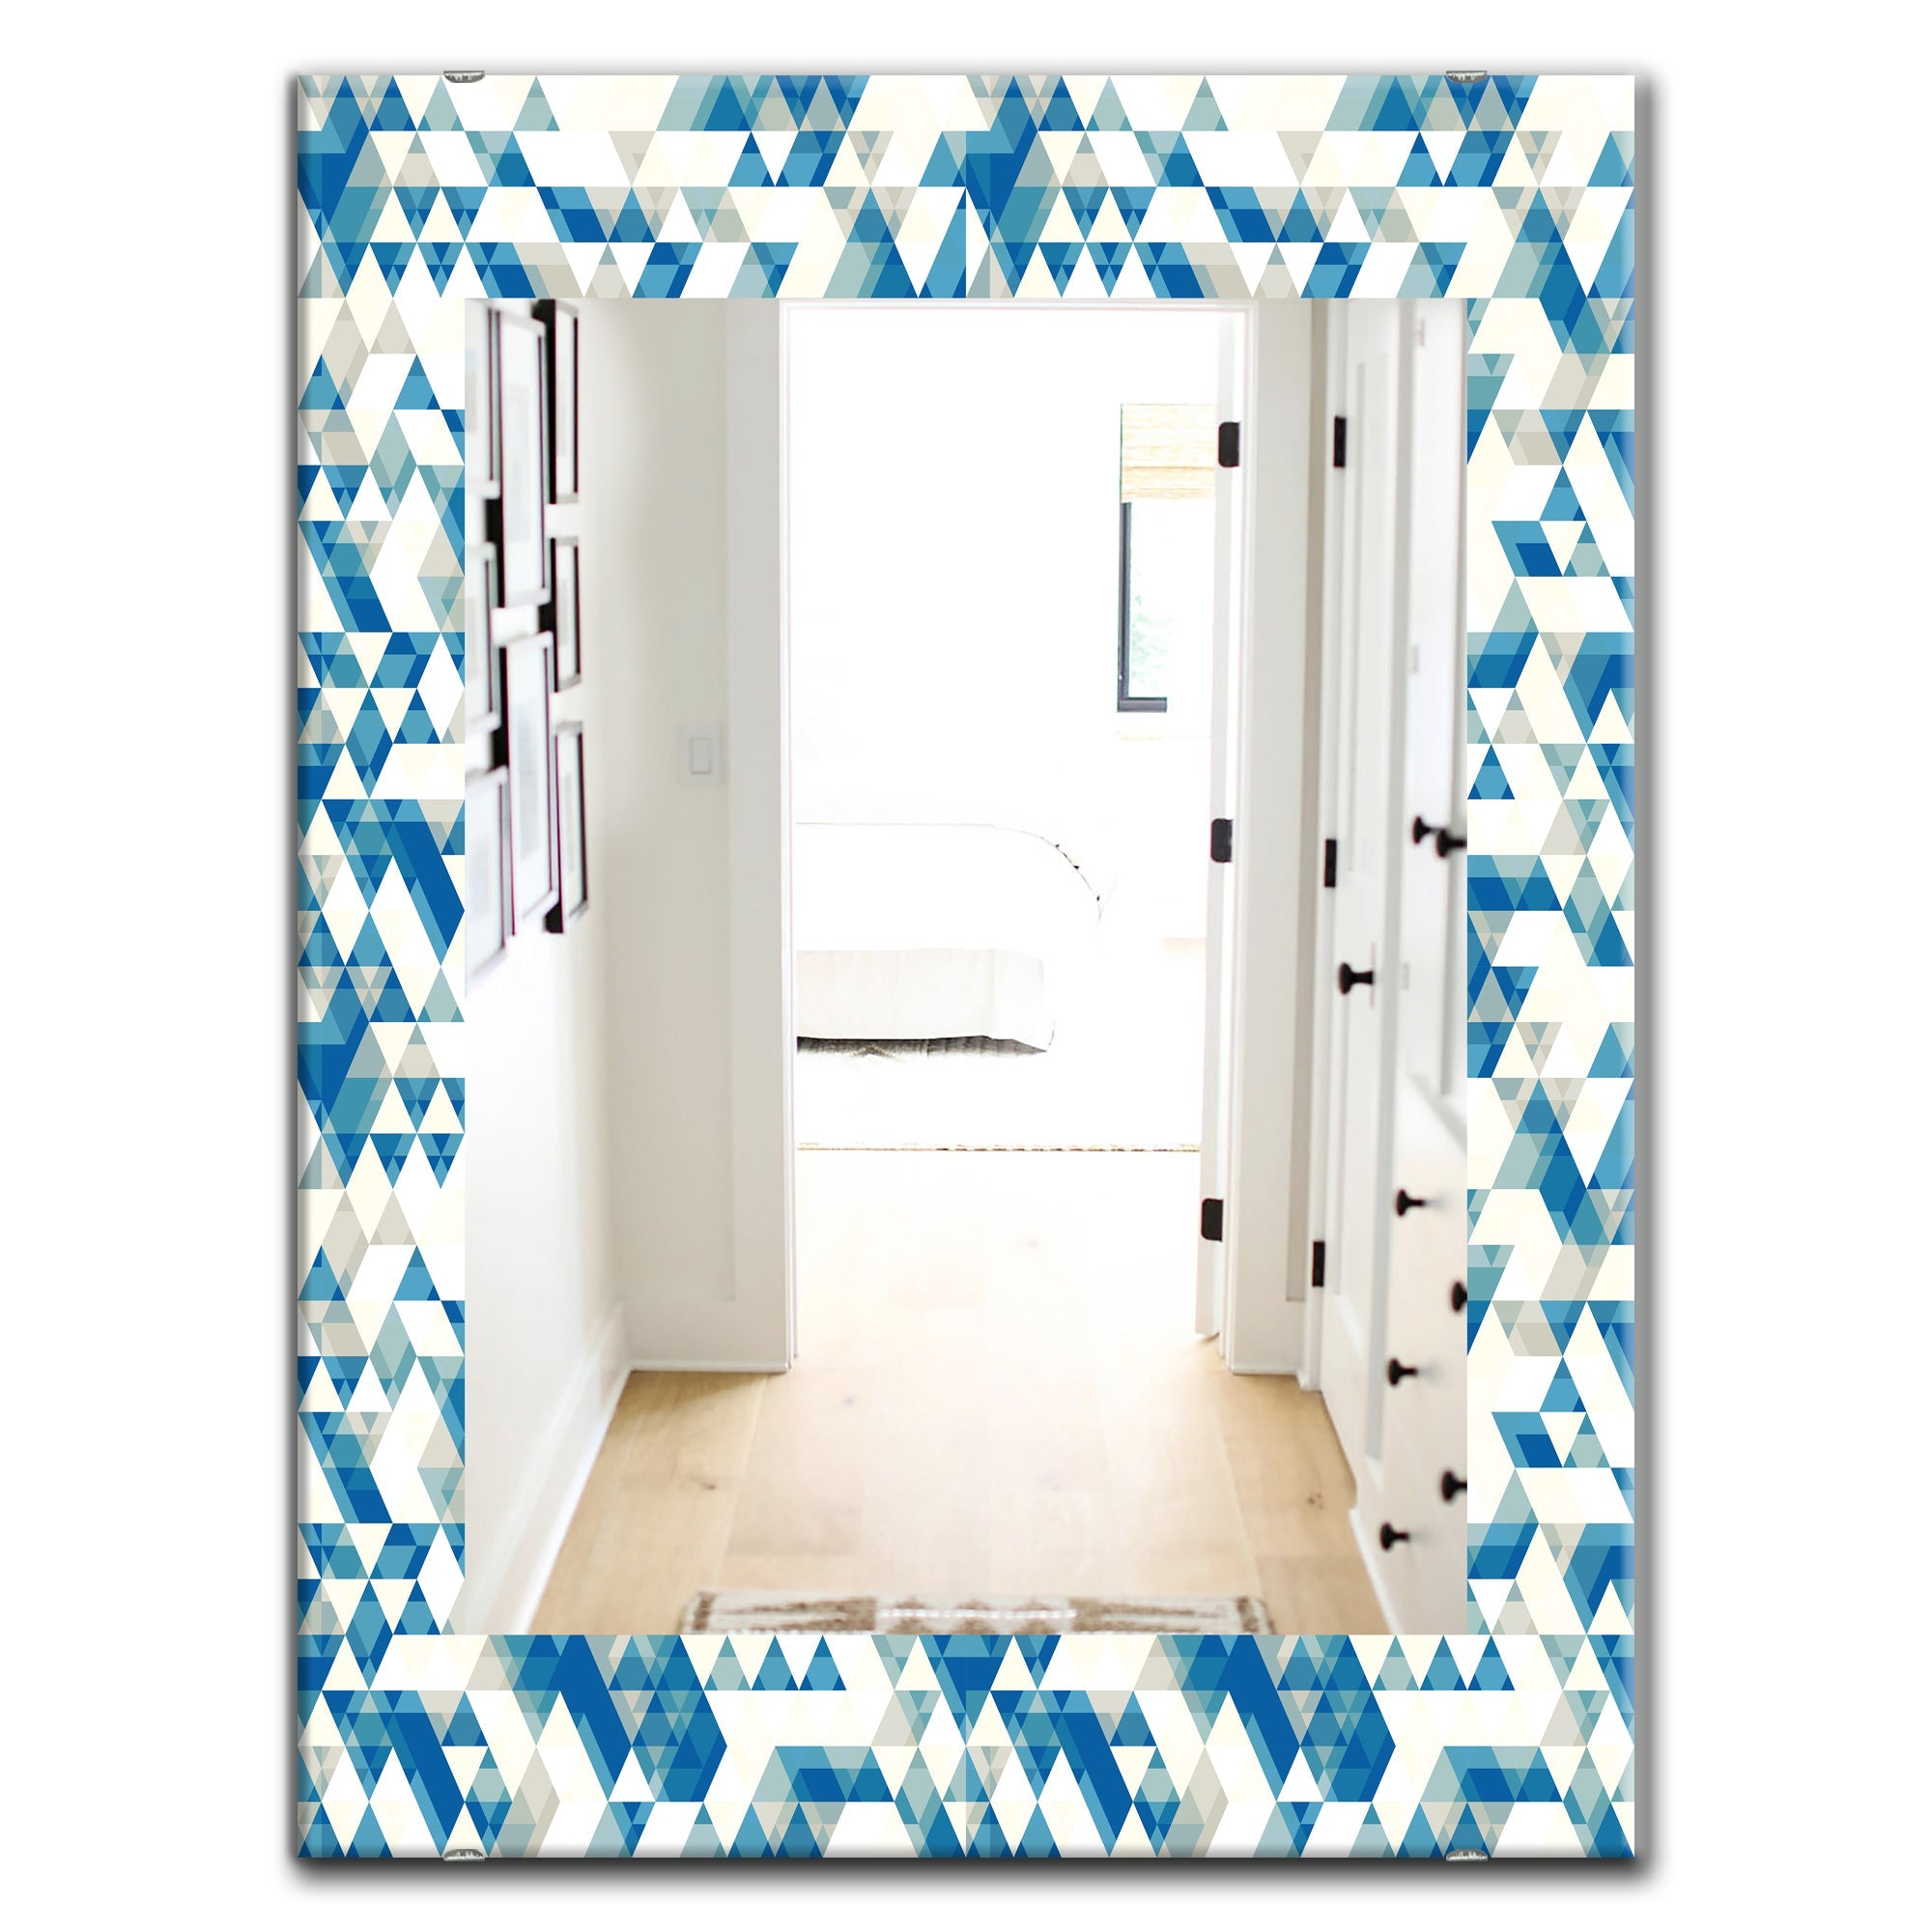 Triangular Colourfields 4' Modern Mirror - Oval or Round Wall Mirror